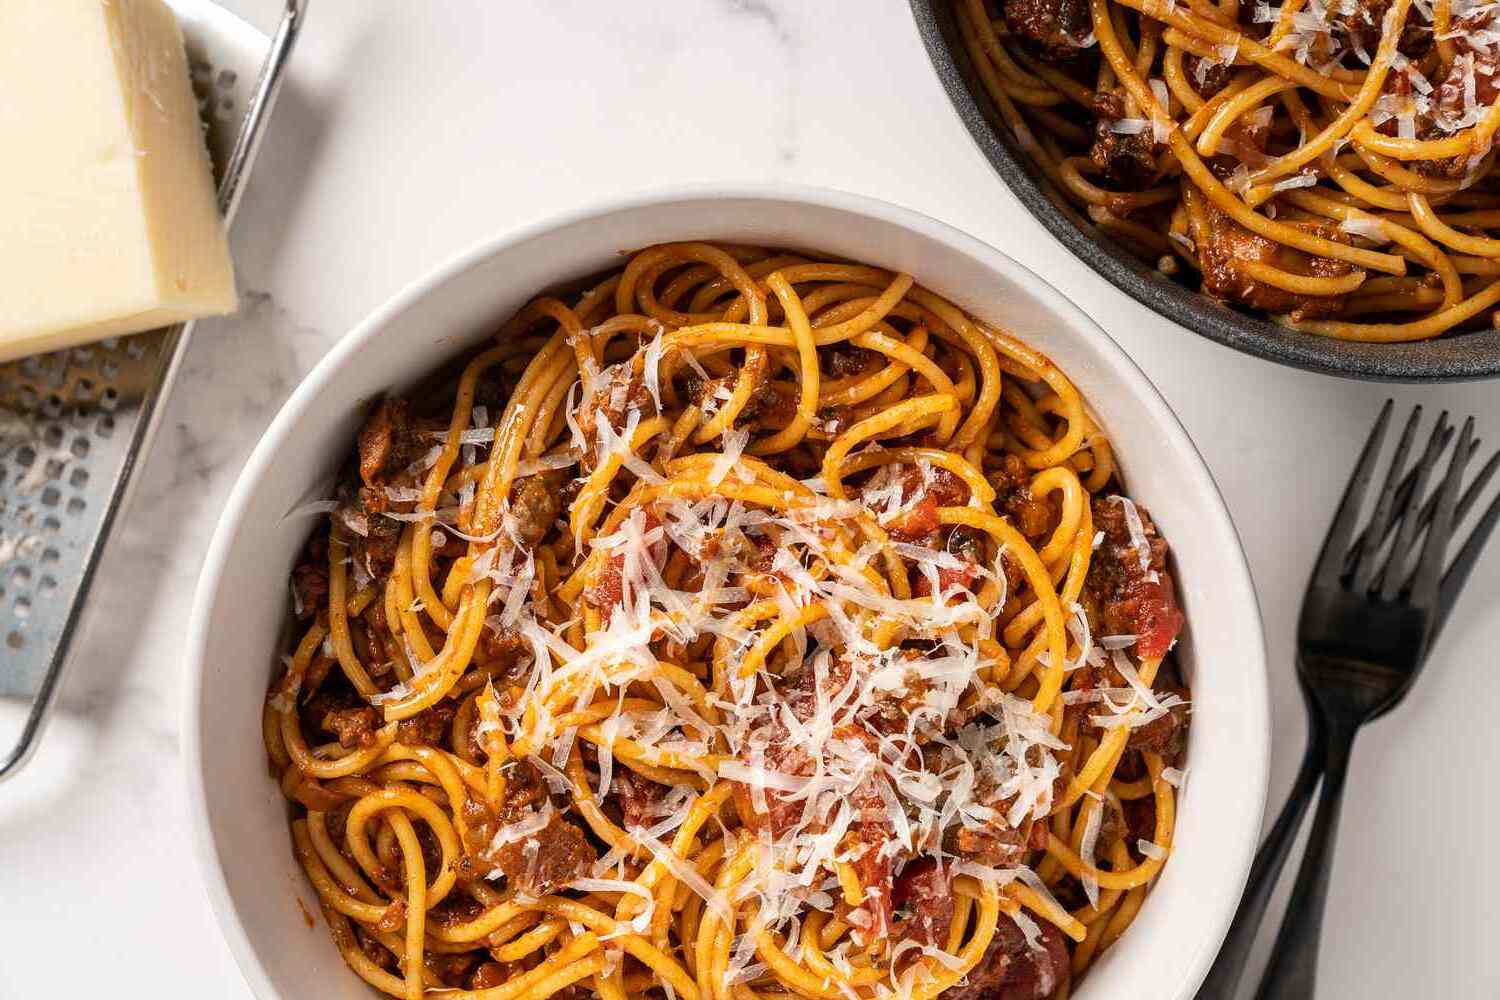 How to make Spaghetti in the Ninja Foodi